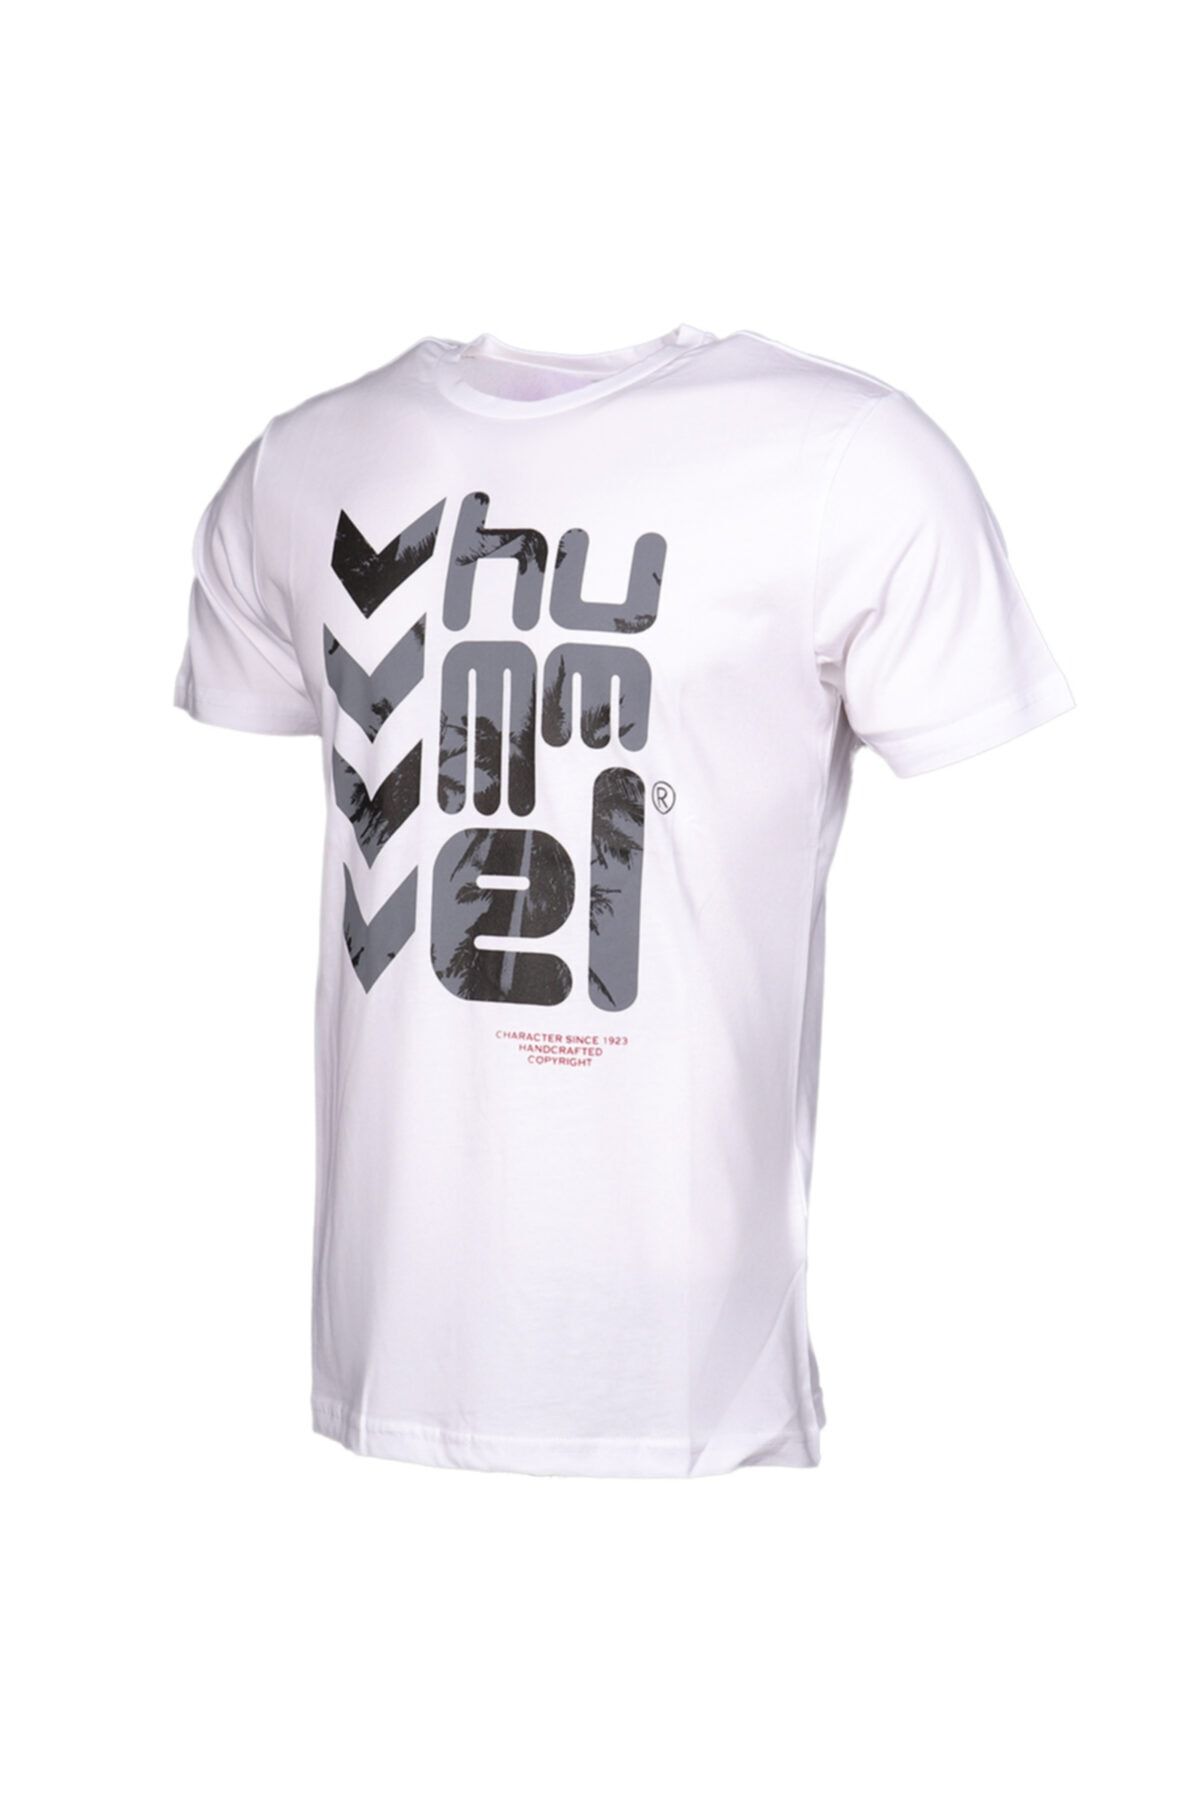 تی شرت پارچه ای قابل تنفس سفید هومل Hummel (برند دانمارک)